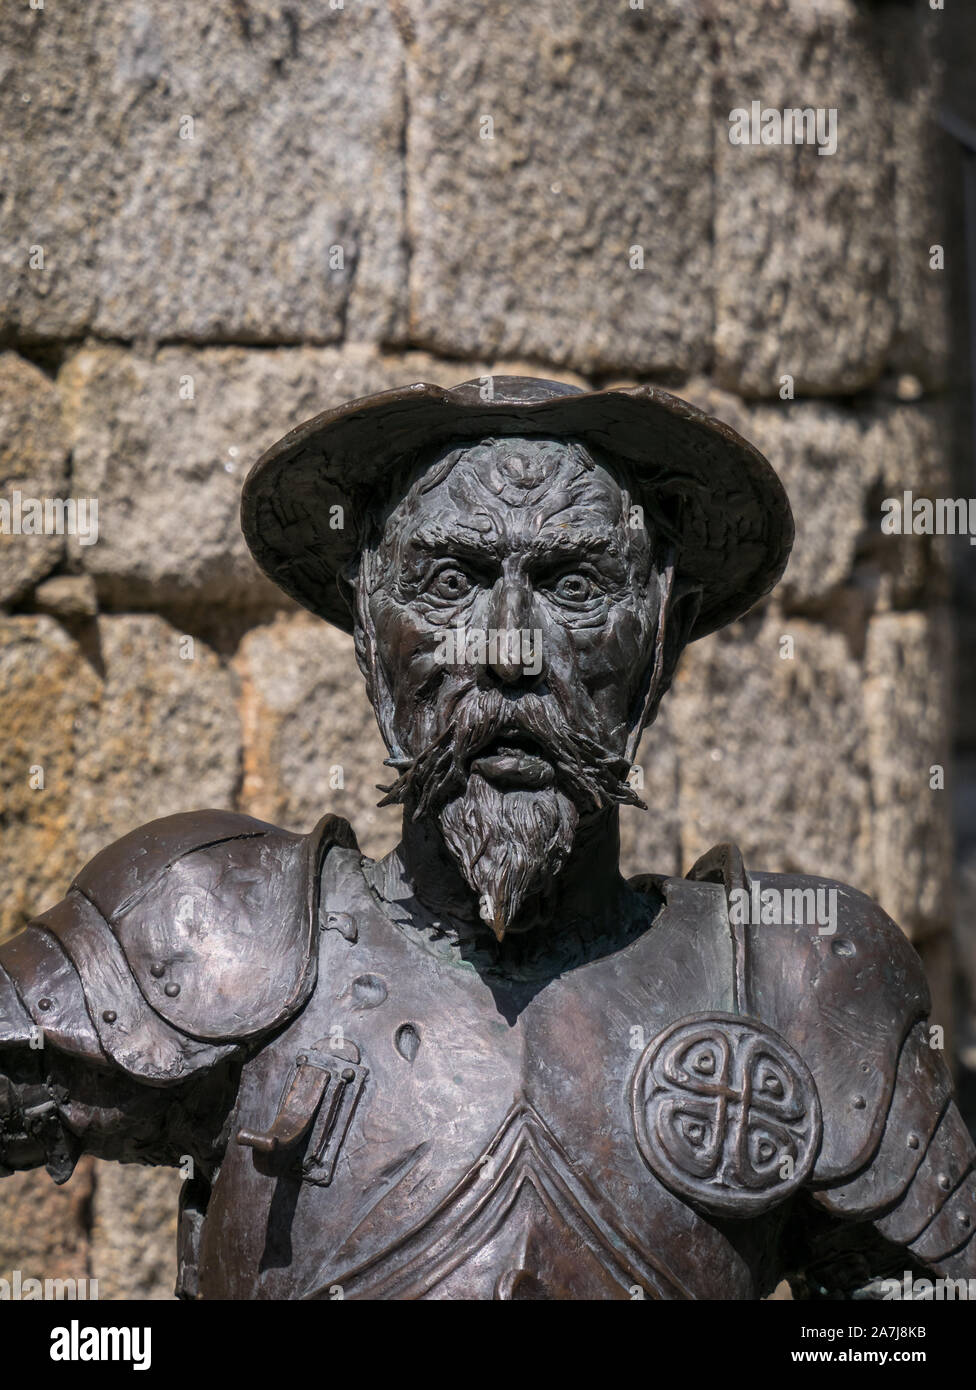 Statue de Don Quichotte dans le château de Puebla de Sanabria, sculpture réalisée par Pedro Requejo Novoa, à Puebla de Sanabria, Espagne Banque D'Images